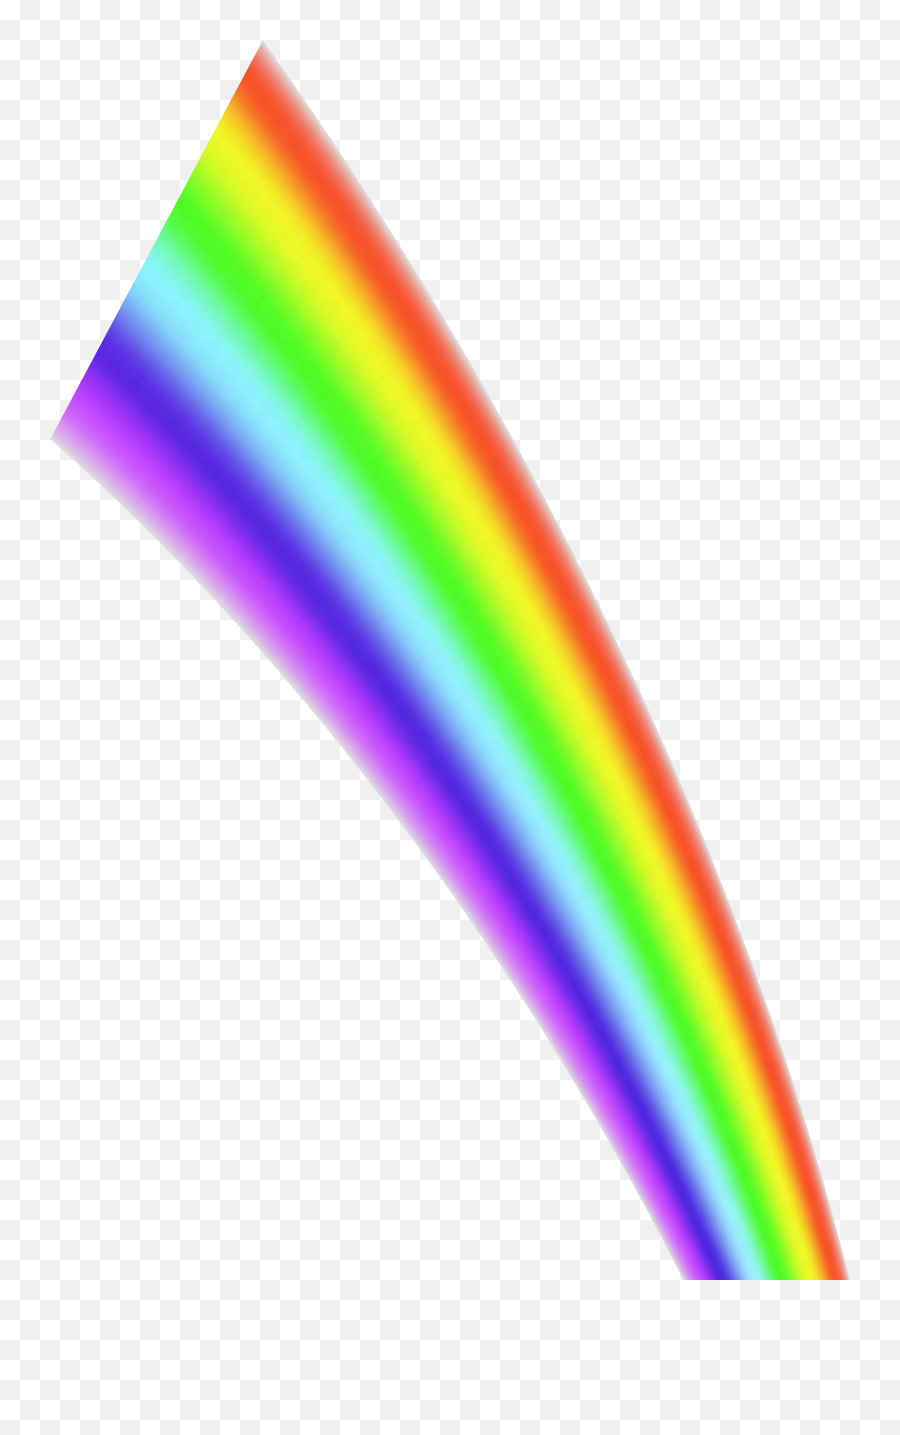 Rainbow Line Transparent Png Clip Art Im 895349 - Png Transparent Background Rainbow Line,Straight Line Png